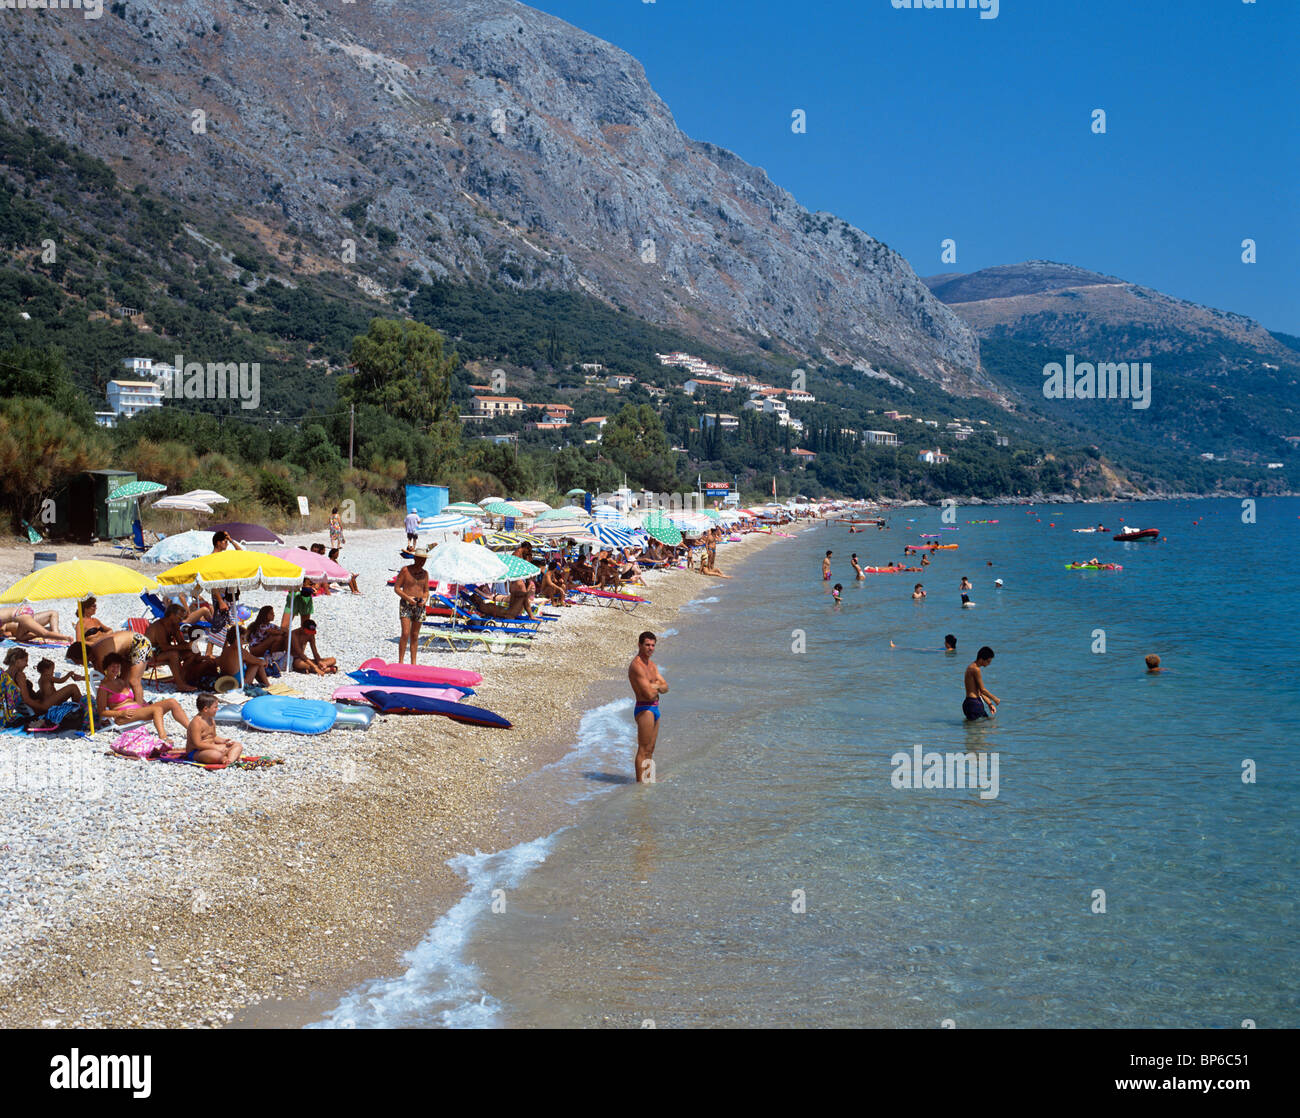 Corfu - The resort of Barbati Beach at the foot of Mount Pantokrator Stock Photo